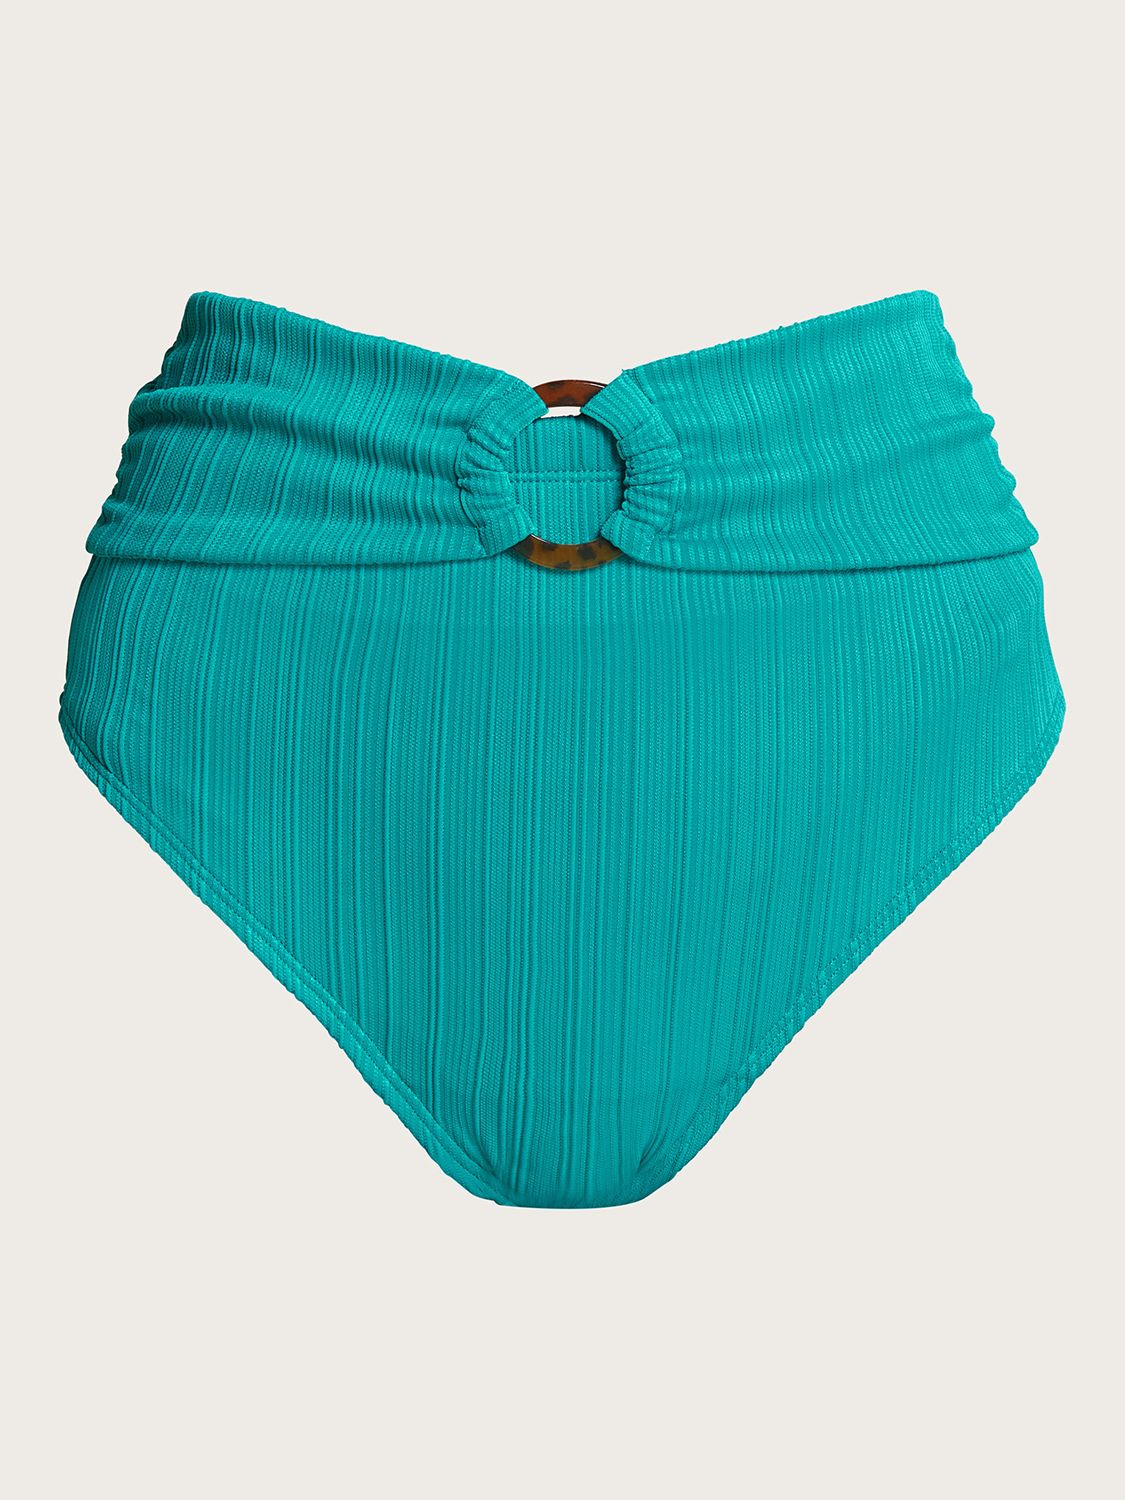 Monsoon Tori Textured High Waist Bikini Bottoms, Turquoise, 8